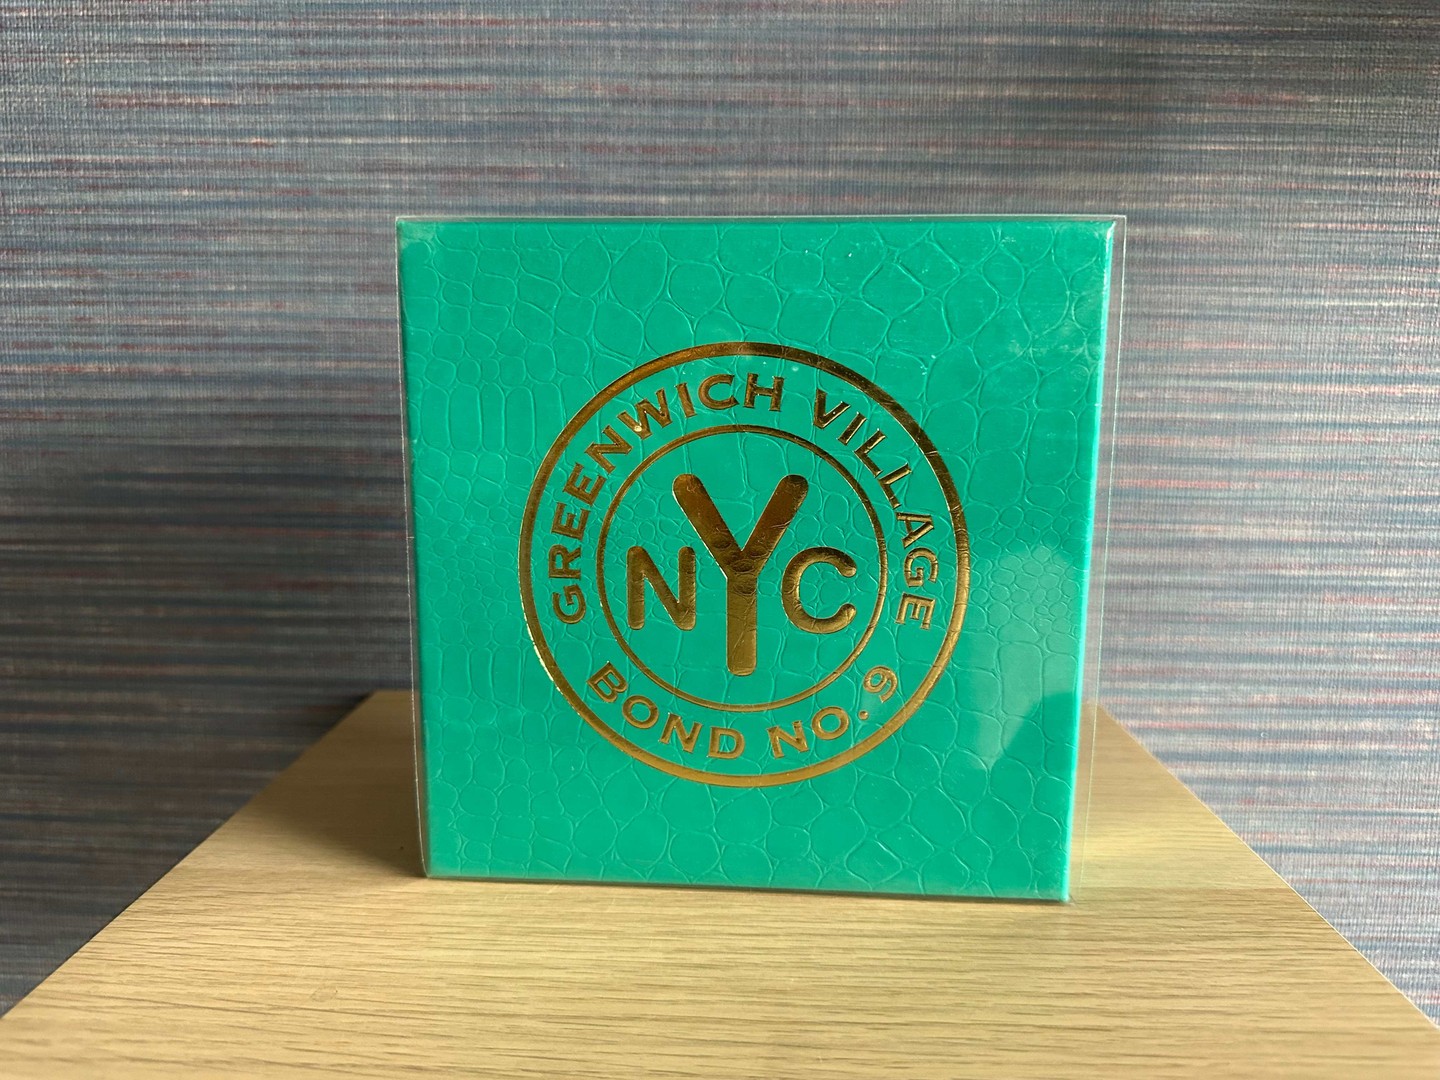 joyas, relojes y accesorios - Perfume Bond NO.9 NYC Greenwich Village Nuevo/ Original RD$ 17,500 NEG 0